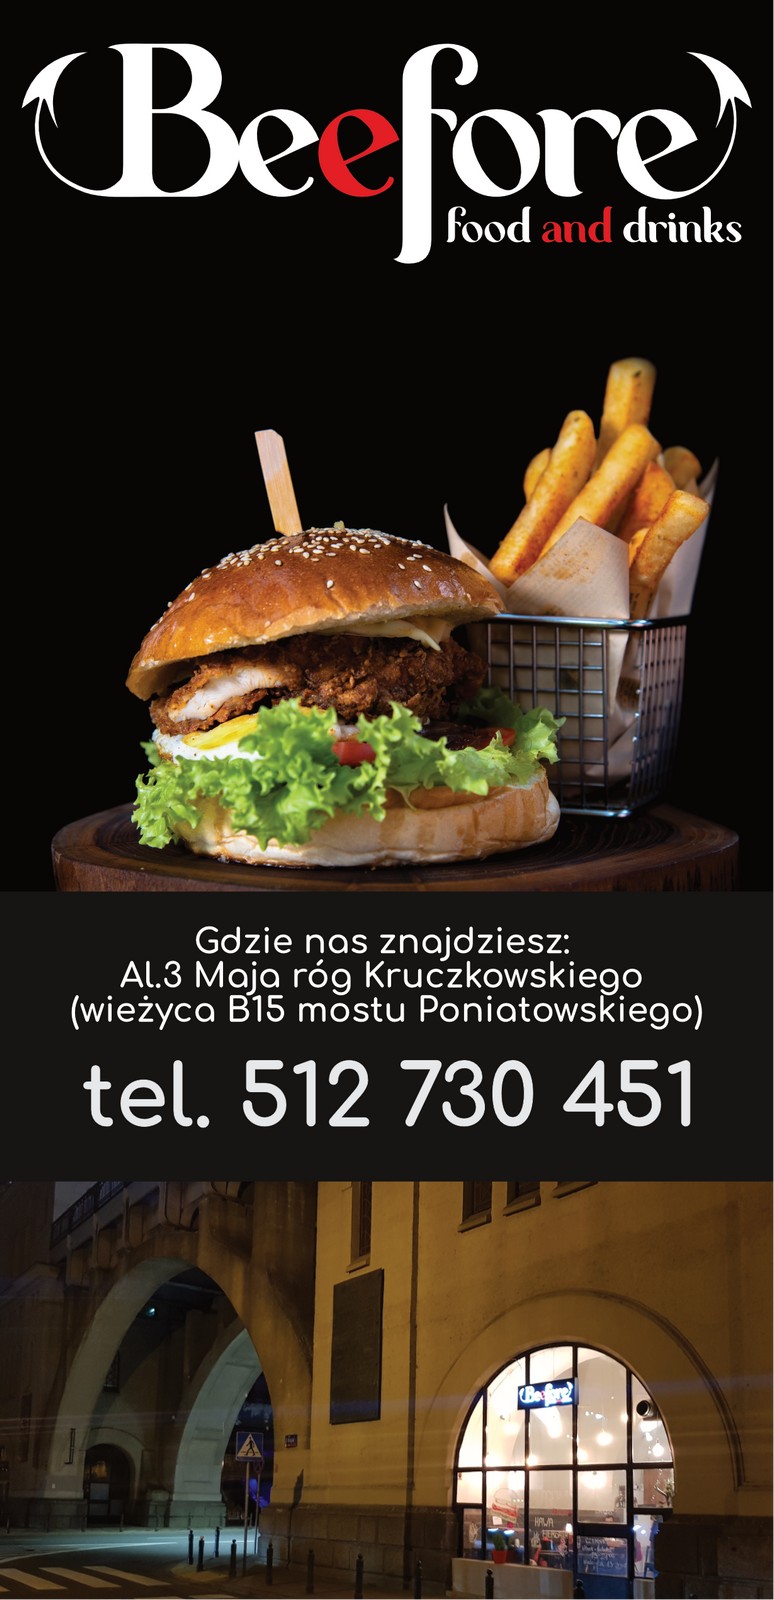 Ulotki reklamowe dla burgerowni na Powiślu - Beefore Food&Drinks